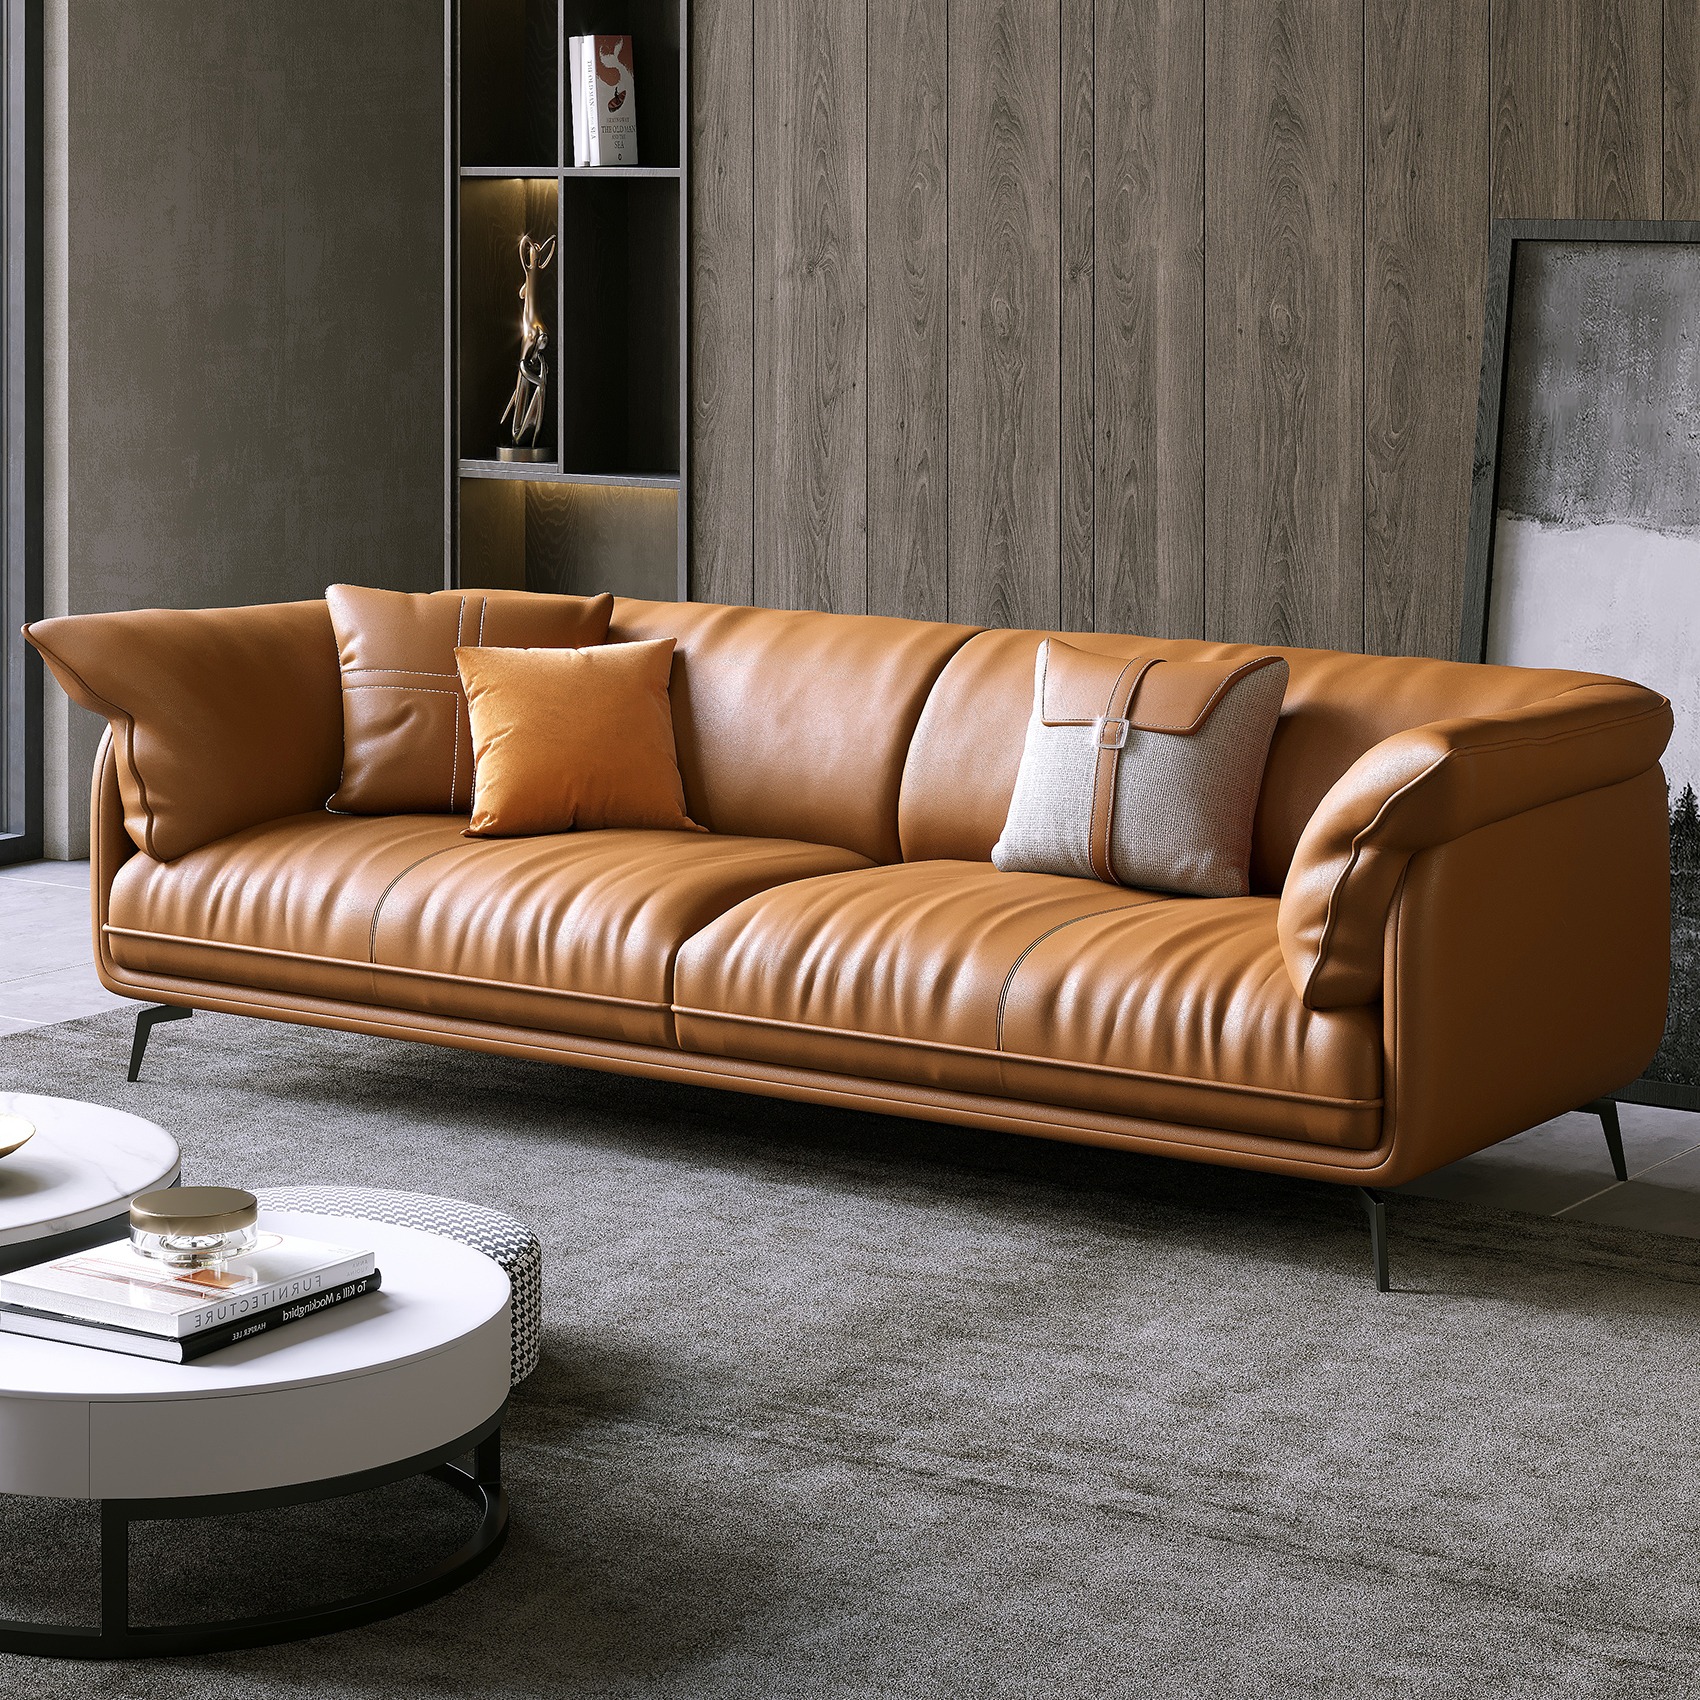 极简沙发对材质和工艺的要求非常高